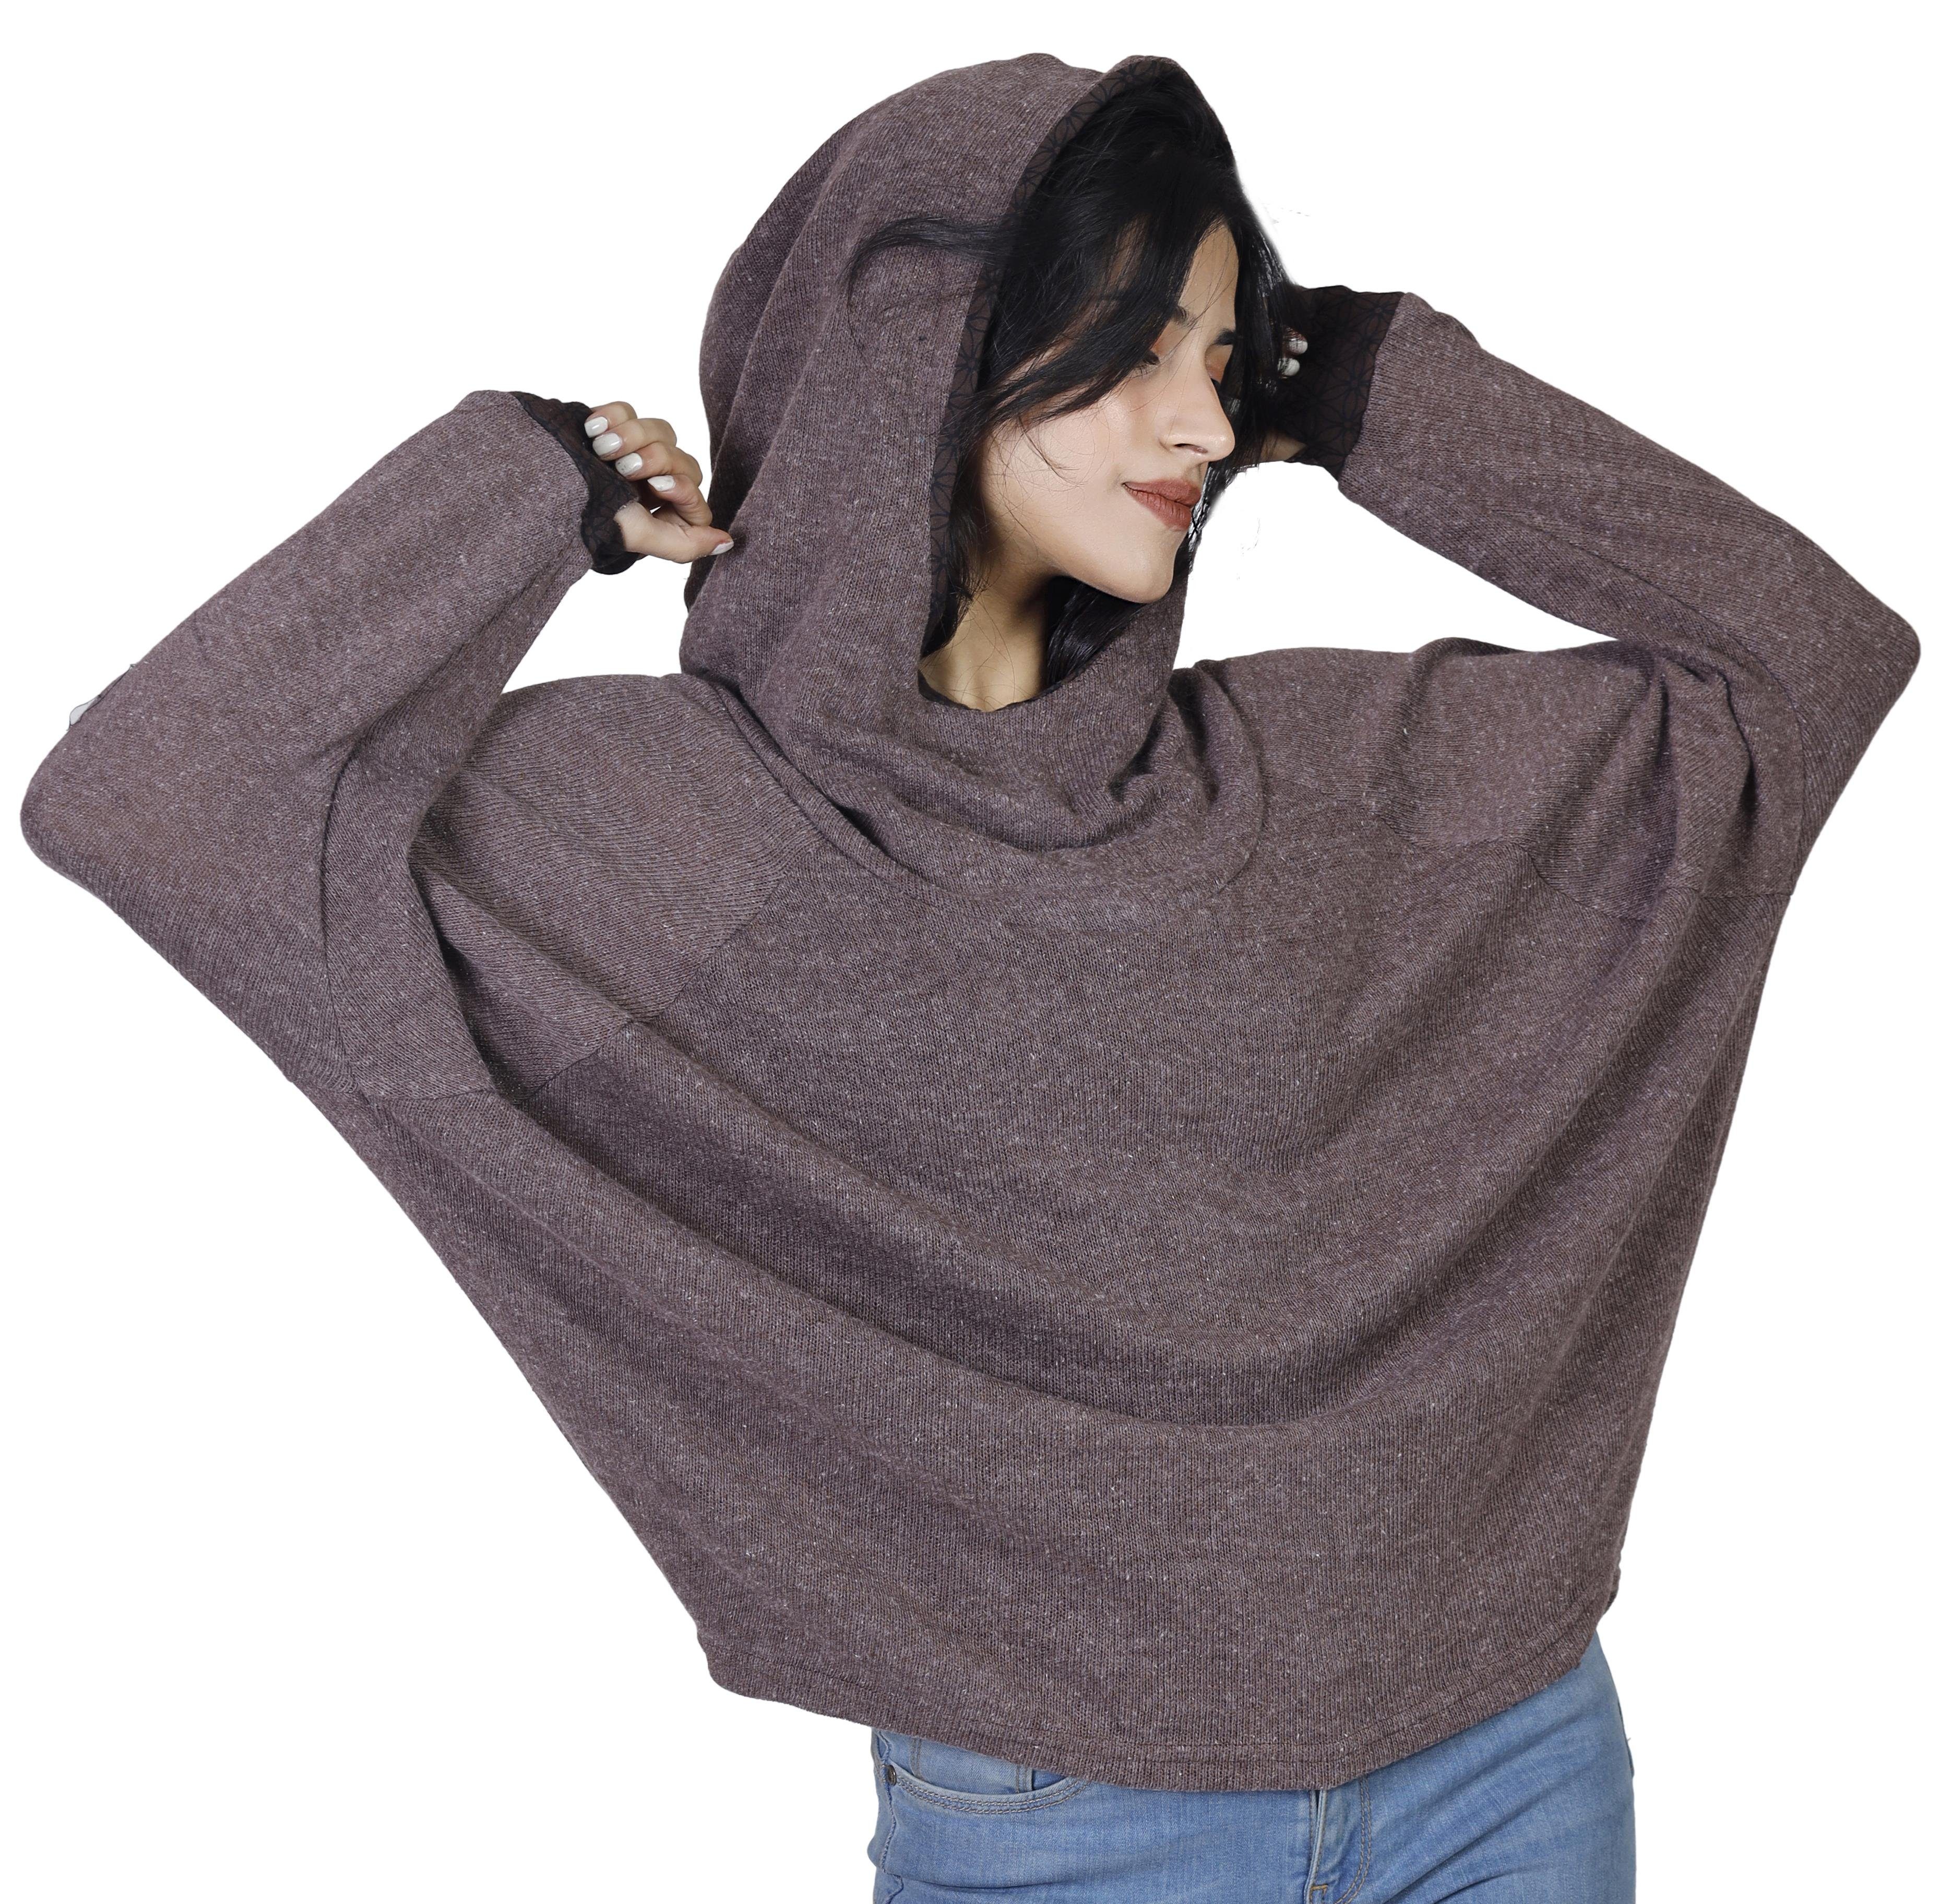 -.. alternative Bekleidung Longsleeve Sweatshirt, Guru-Shop Kapuzenpullover braun Hoody, Pullover,